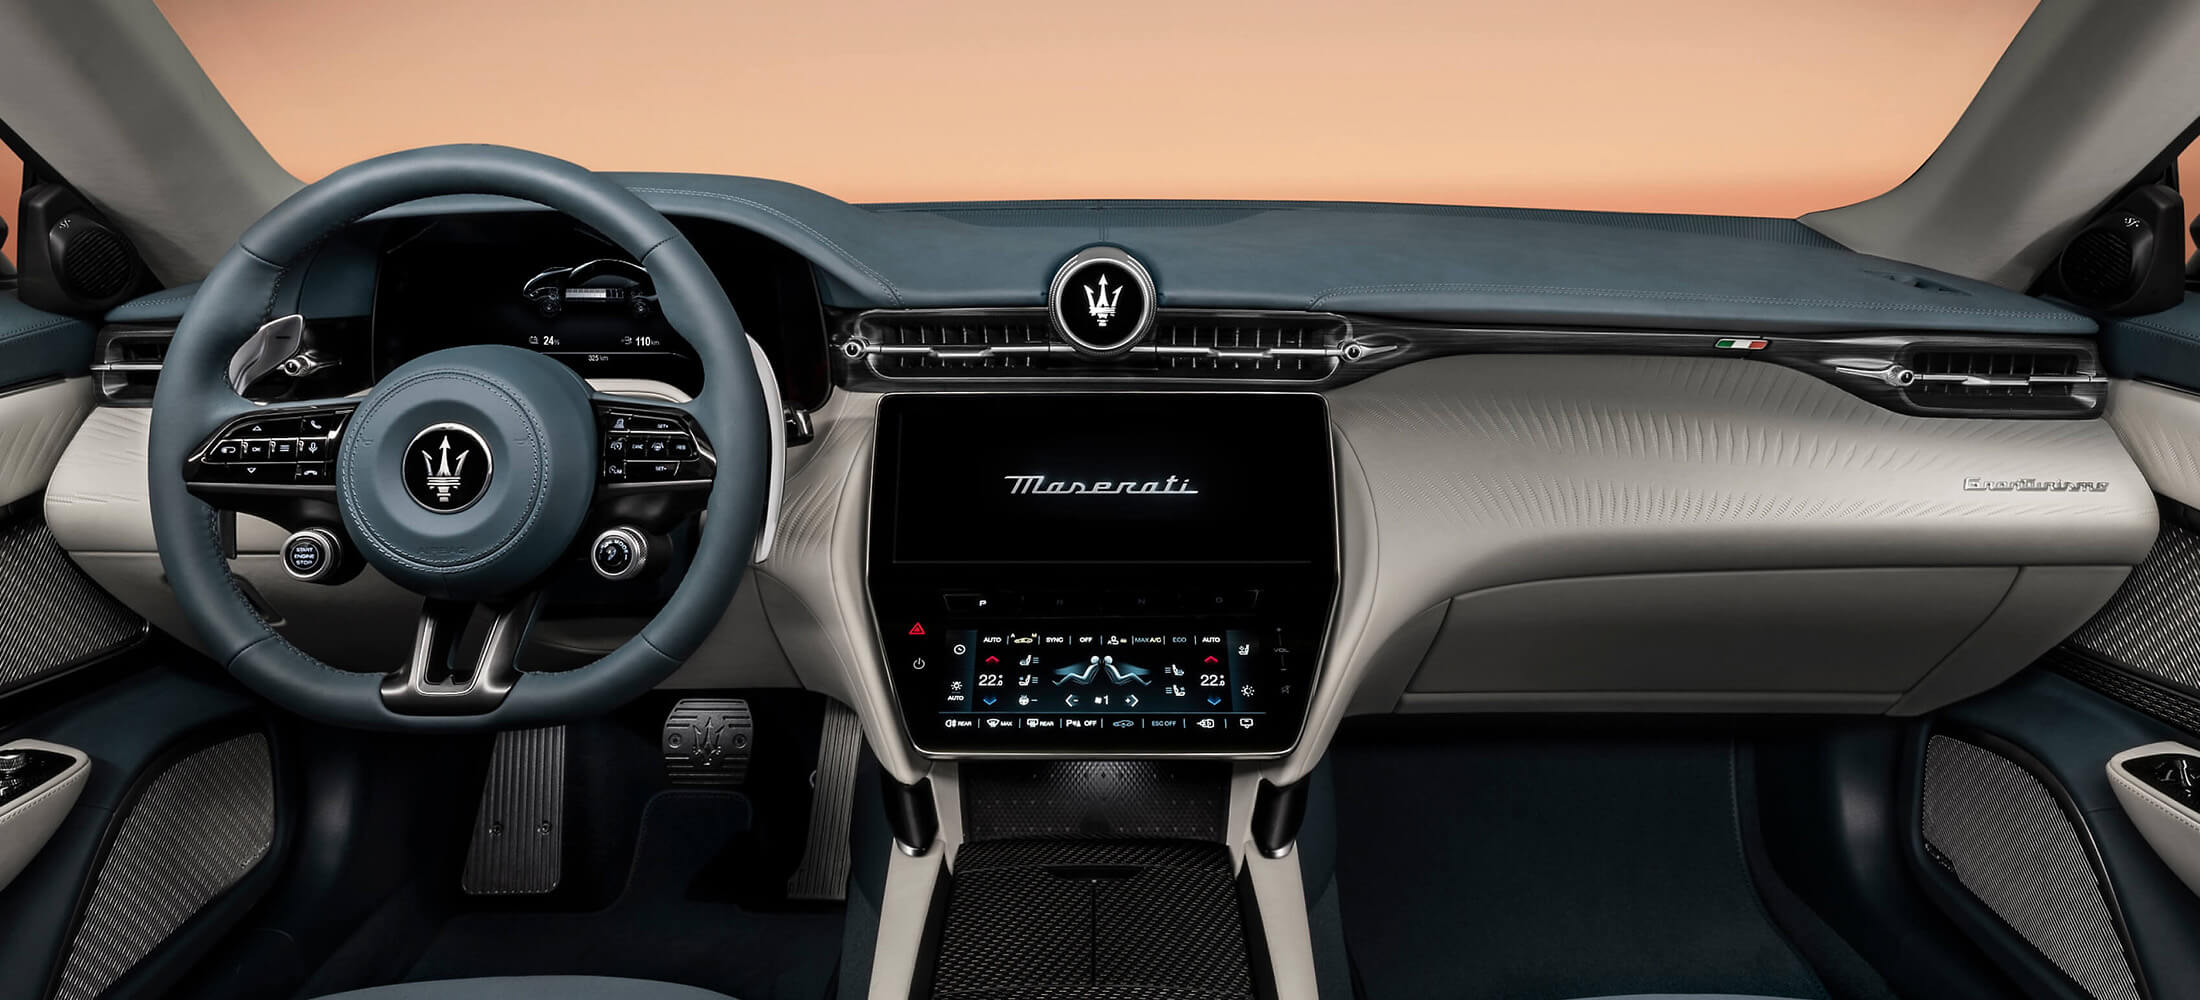 Maserati GranTurismo Interieur